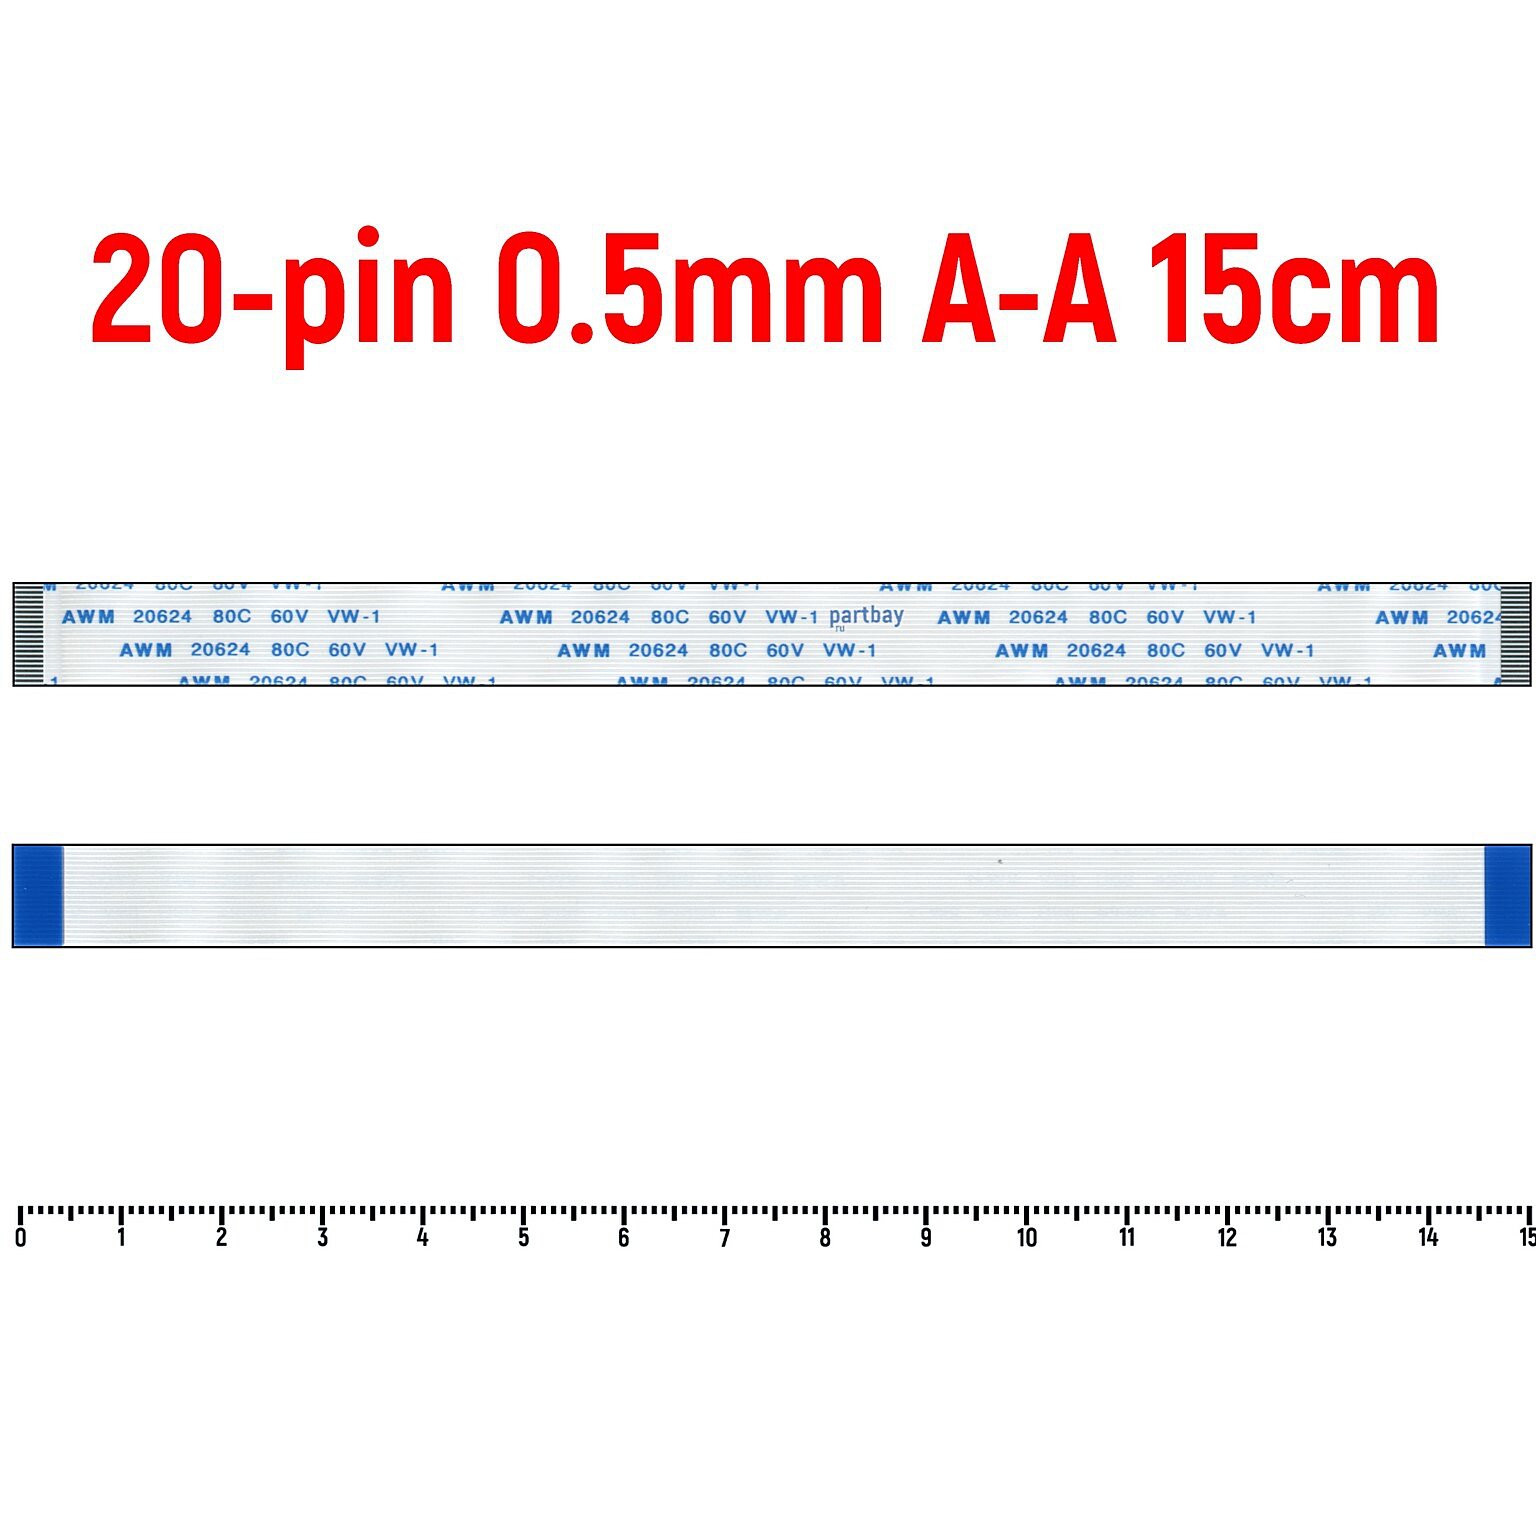 Шлейф FFC 20-pin Шаг 0.5mm Длина 15cm Прямой A-A